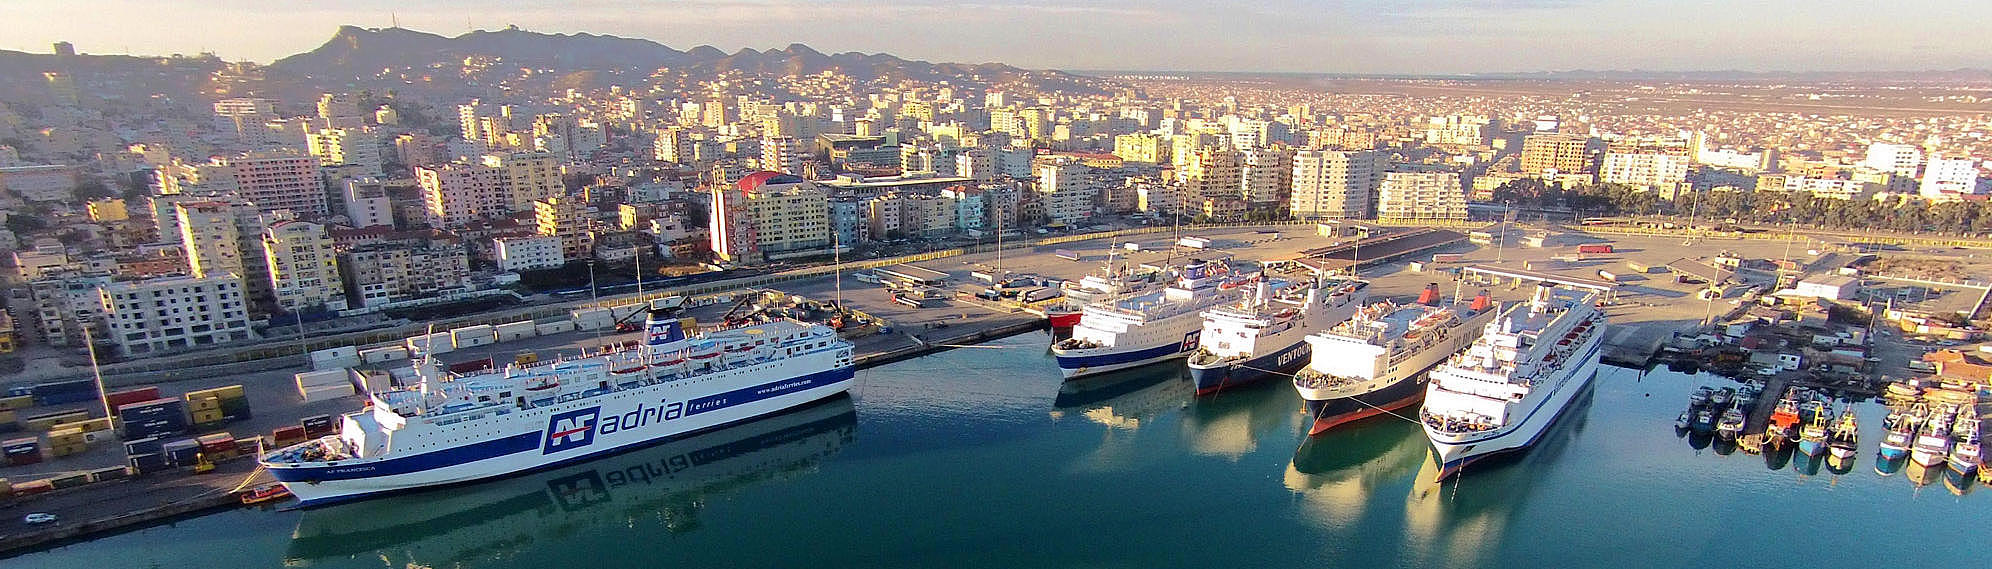 Hafen in Albanien.